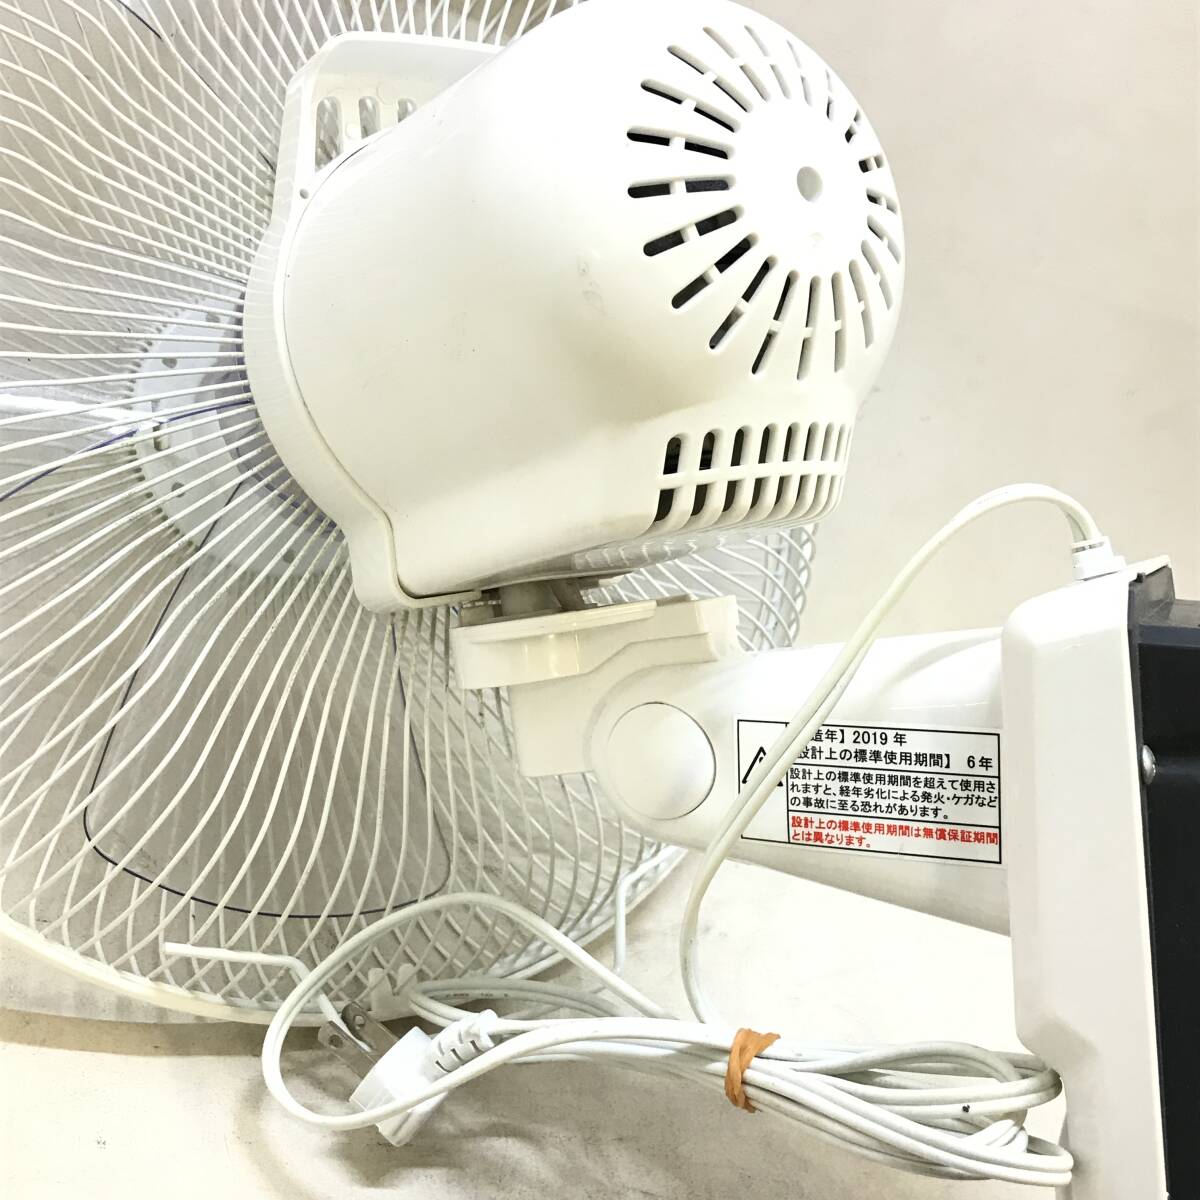 # 電響社 扇風機 壁掛け DKL-A3119 2019年製 動作確認済 首振り 風量調節 紐付 ファン 空調 家電 冷房器具 中古品 #R30122_画像4